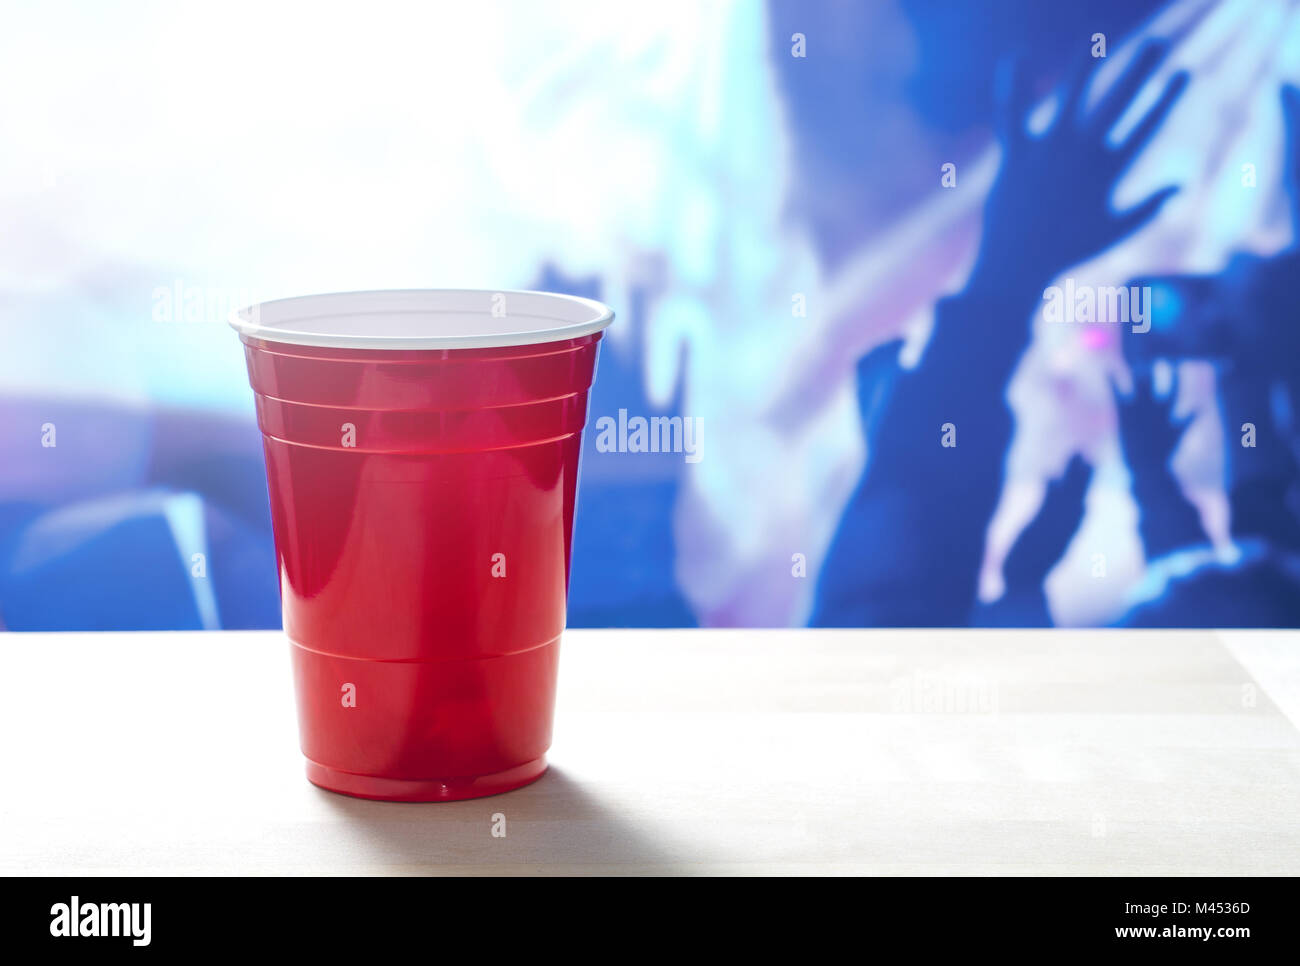 Kunststoff rot party Schale auf einem Tisch. Nachtclub voller Menschen tanzen auf der Tanzfläche im Hintergrund. Disco Beleuchtung. Perfekt für Marketing. Stockfoto